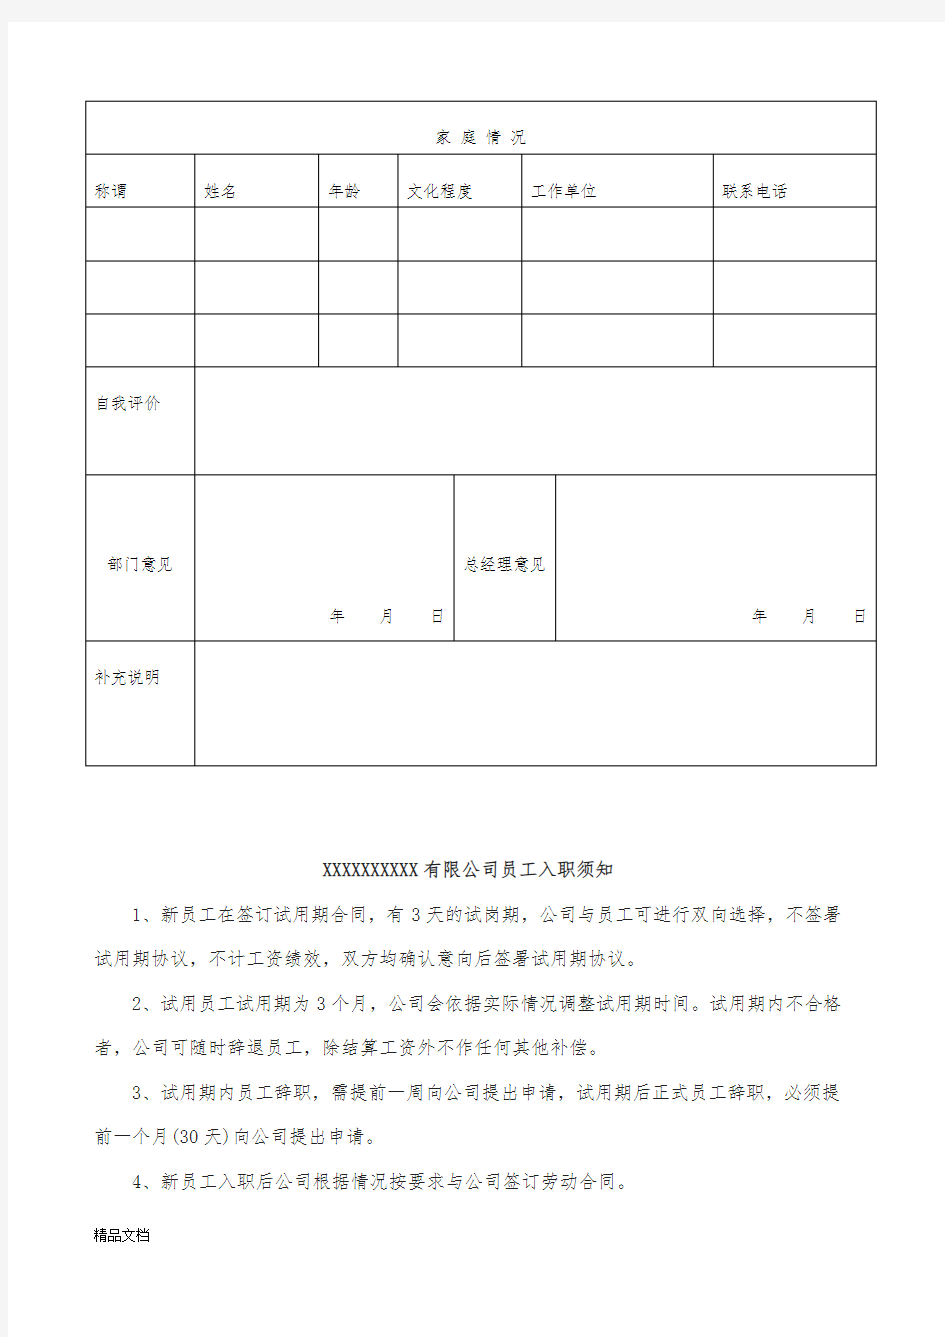 入职登记表(打印版)